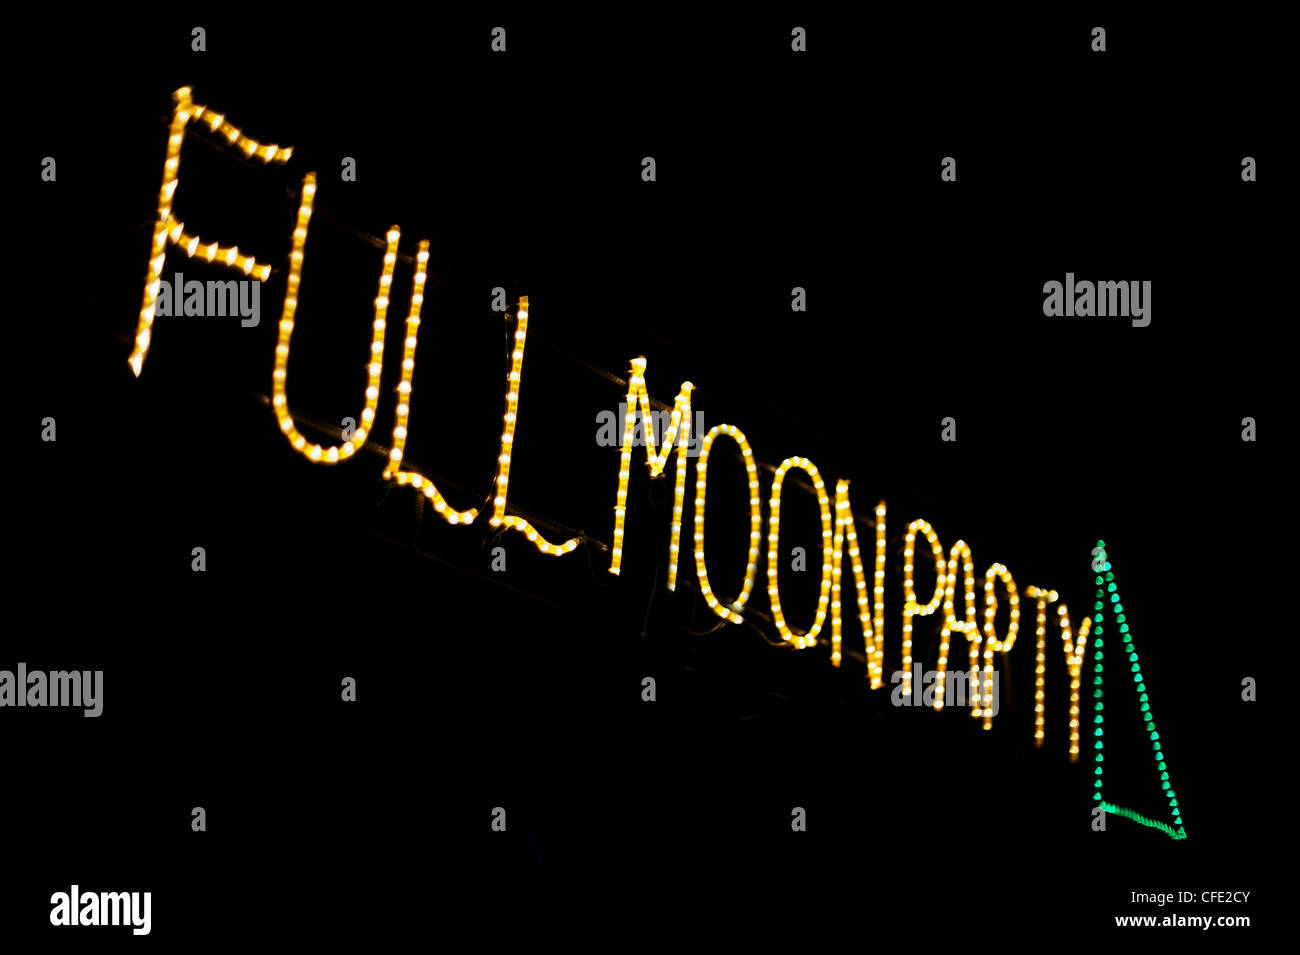 Full Moon Party Stock Photo